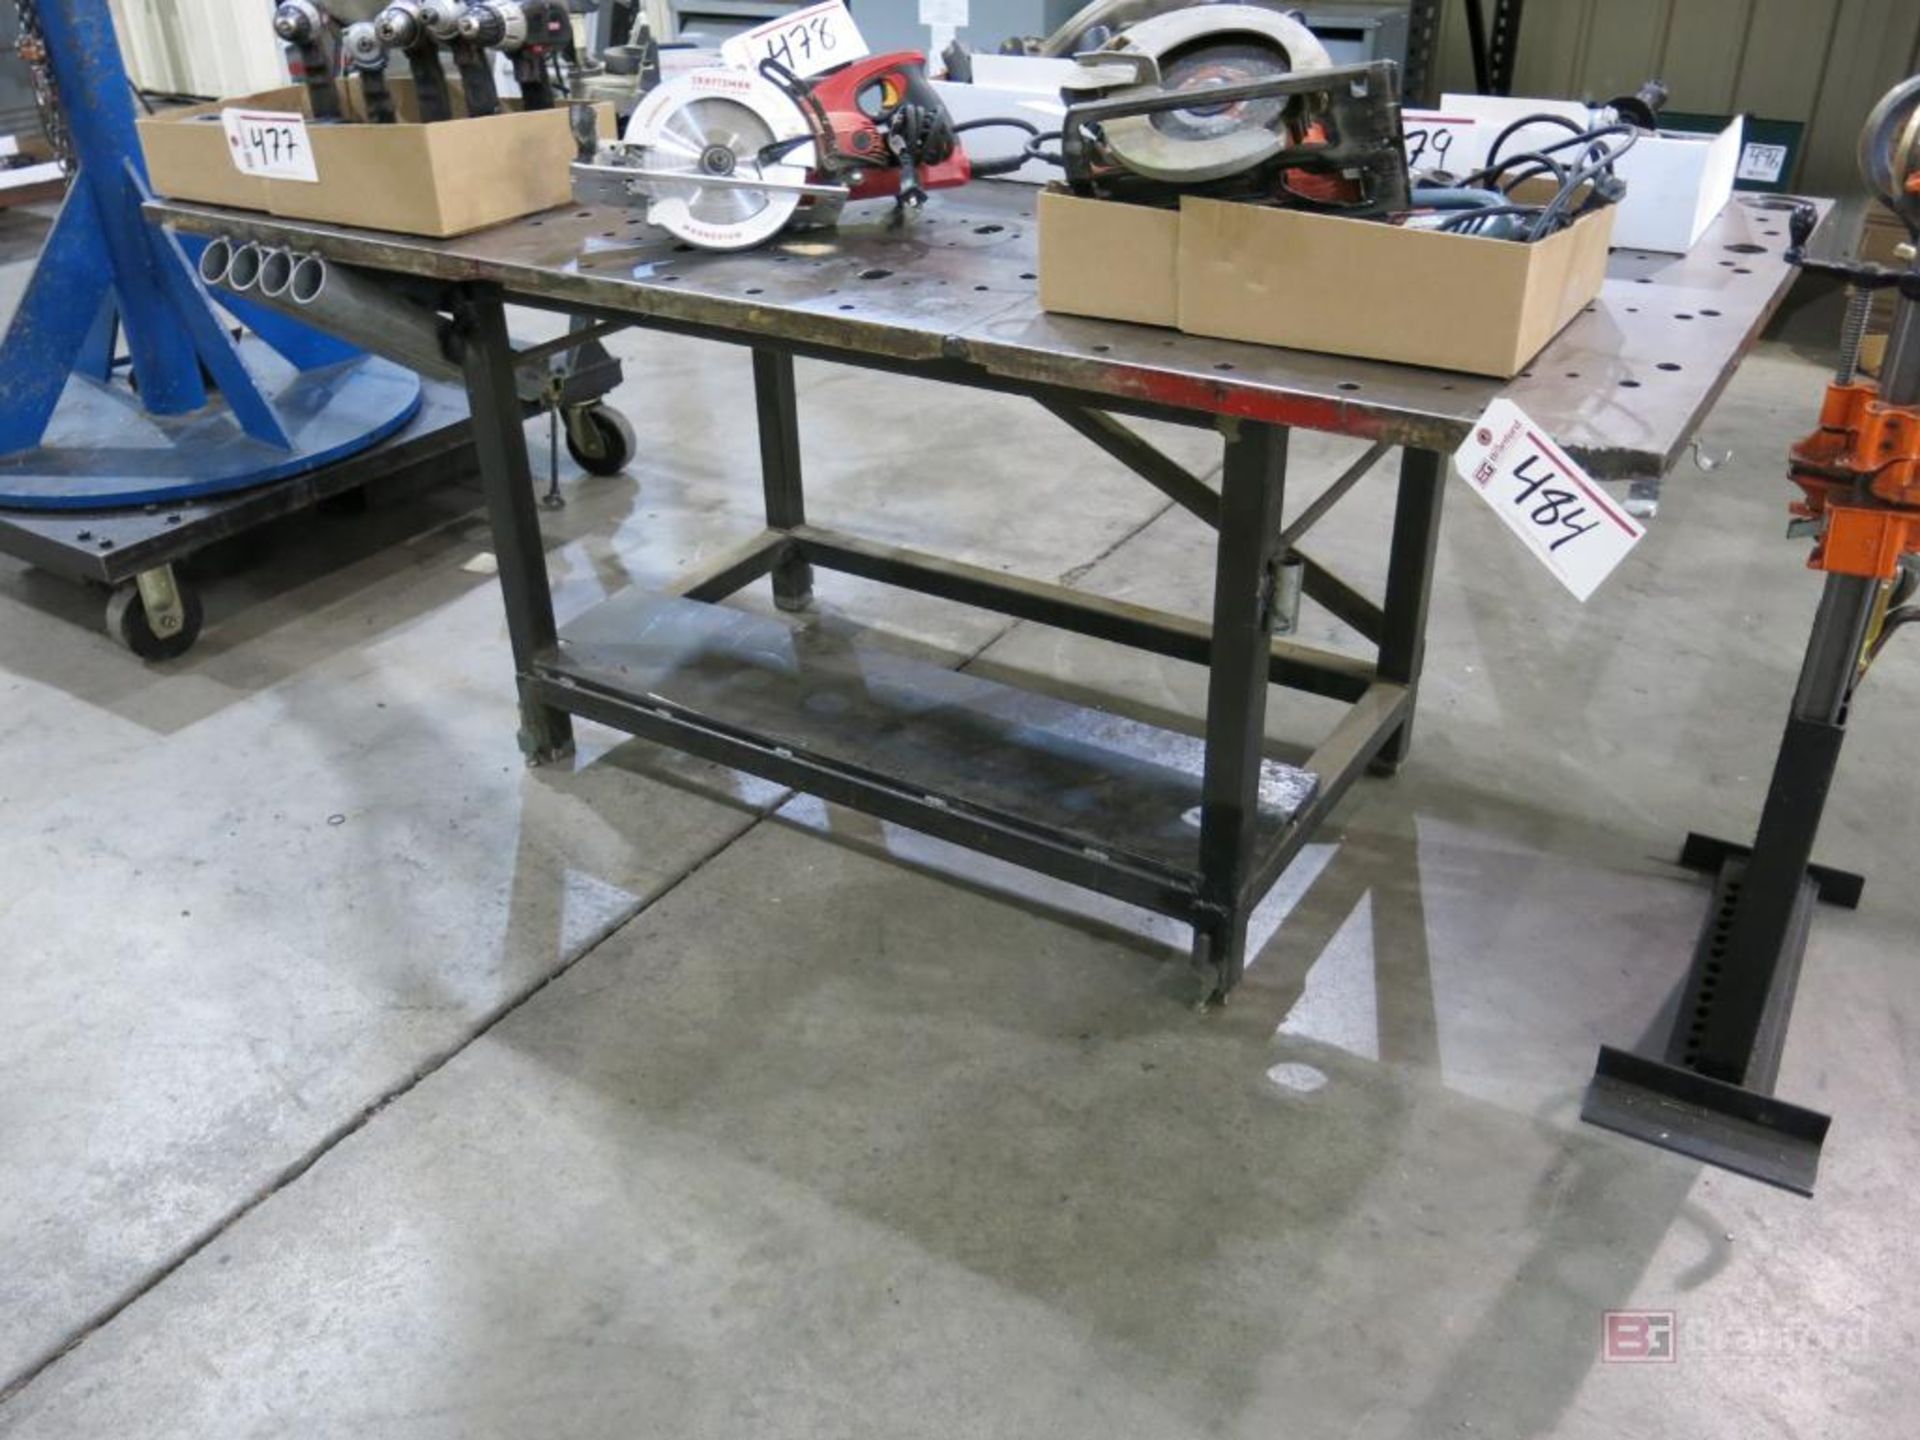 76" x 39" Heavy Duty Steel Welding Table